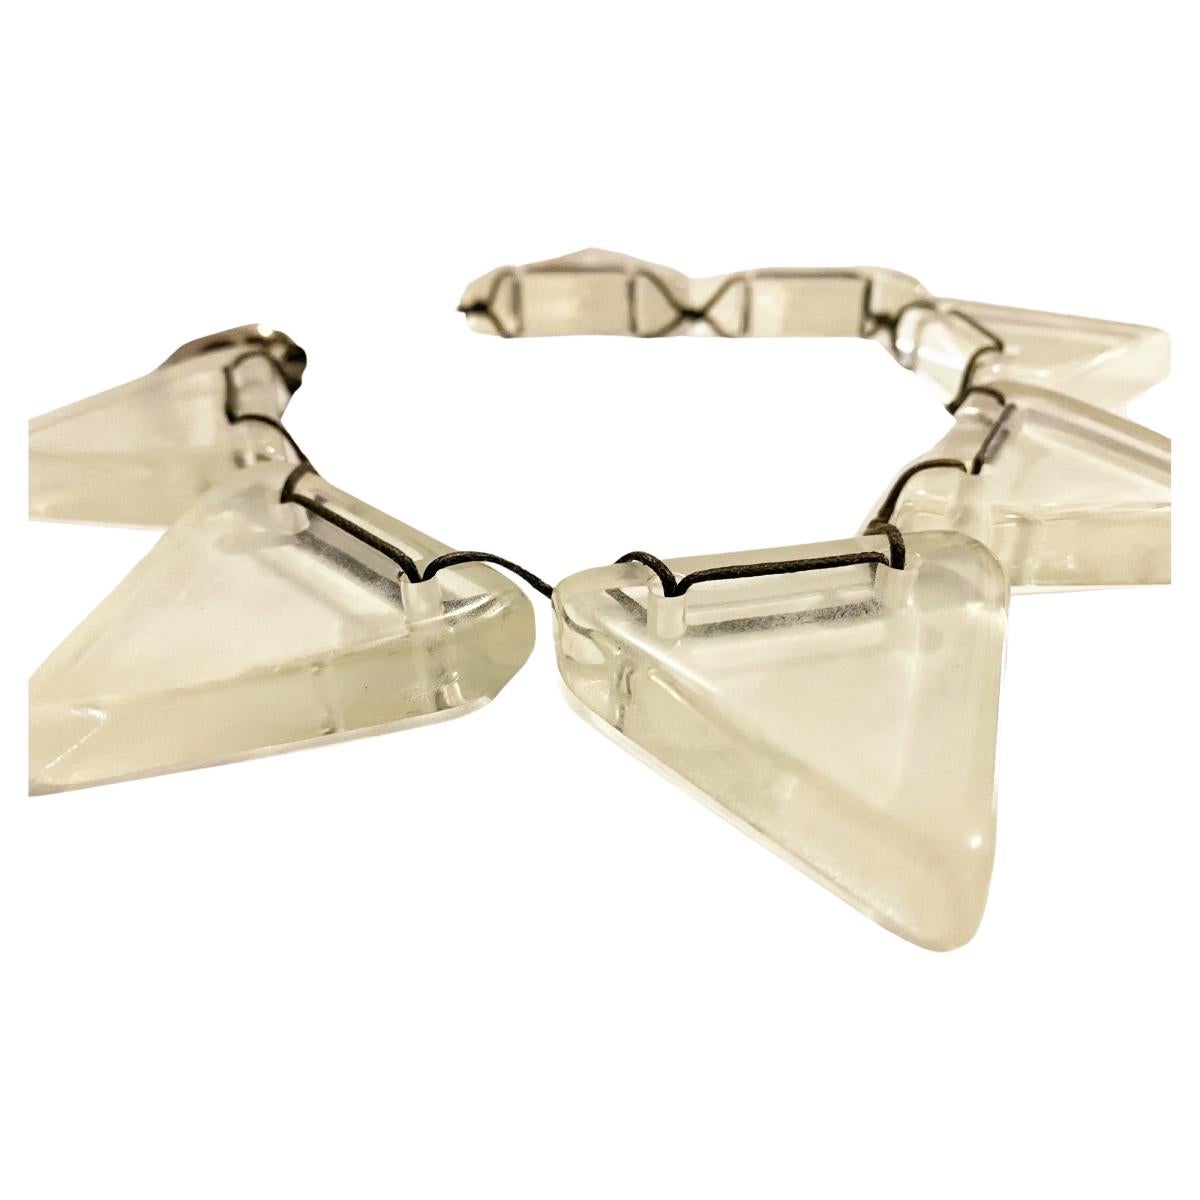 1990er La Perla Star Shaped Necklace, dicke dreieckige Anhänger, die eine sternförmige Form bilden, wenn sie mit schwarzen Schnürsenkeln verschränkt getragen werden, steinförmiger Stahlanhänger auf der Rückseite 

1990er Jahre, Vintage-Stücke, mit